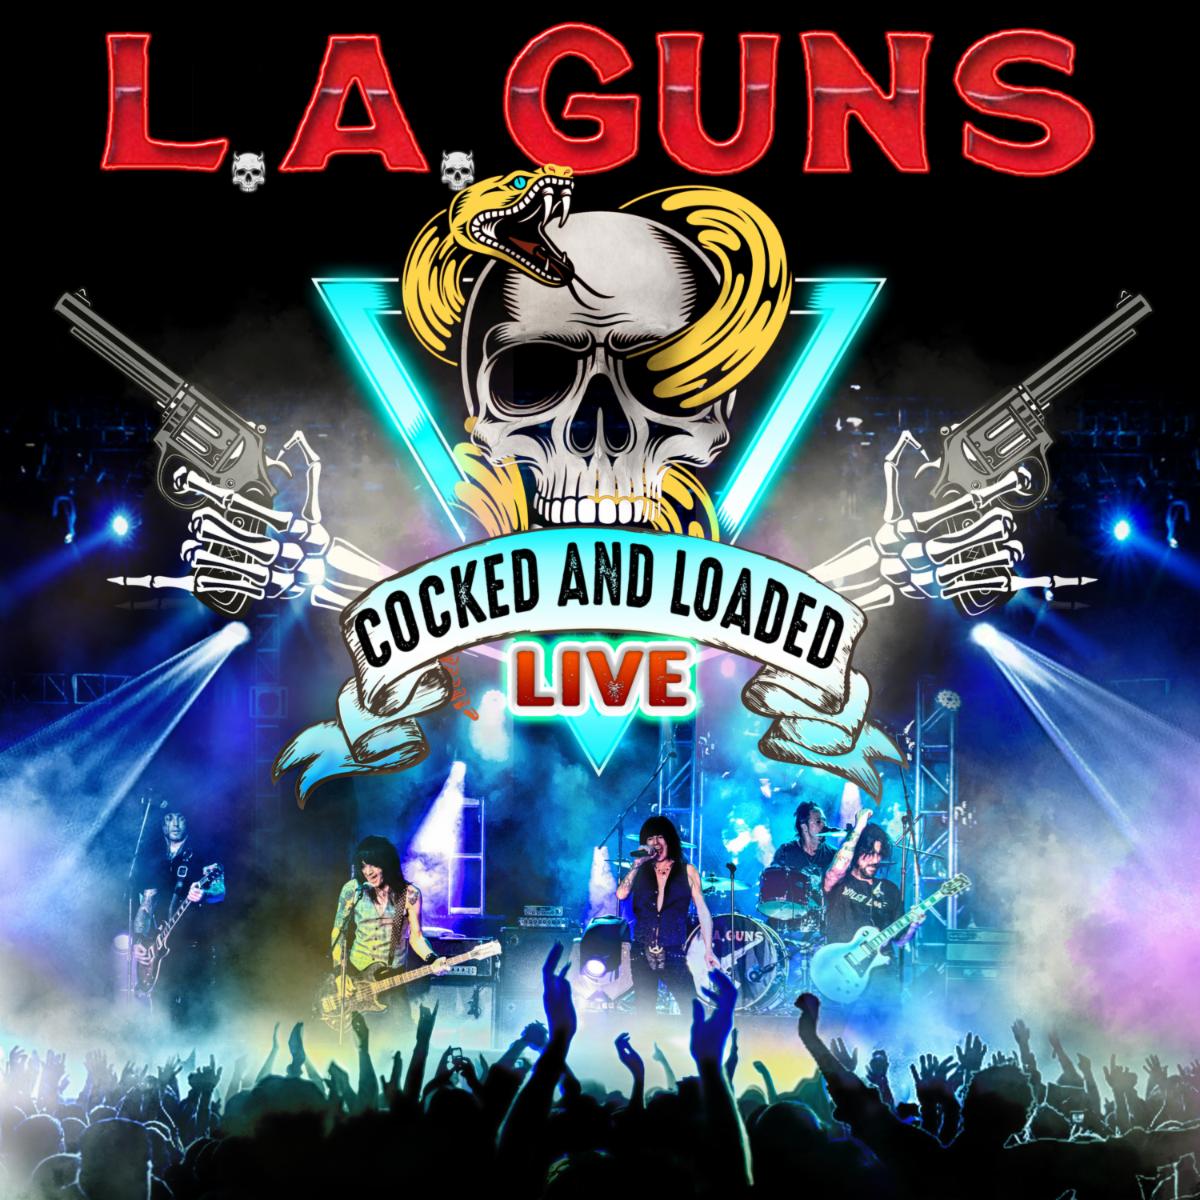 L.A. GUNS ANNOUNCES NEW LIVE ALBUM "COCKED & LOADED LIVE" DUE JULY 9, 2021